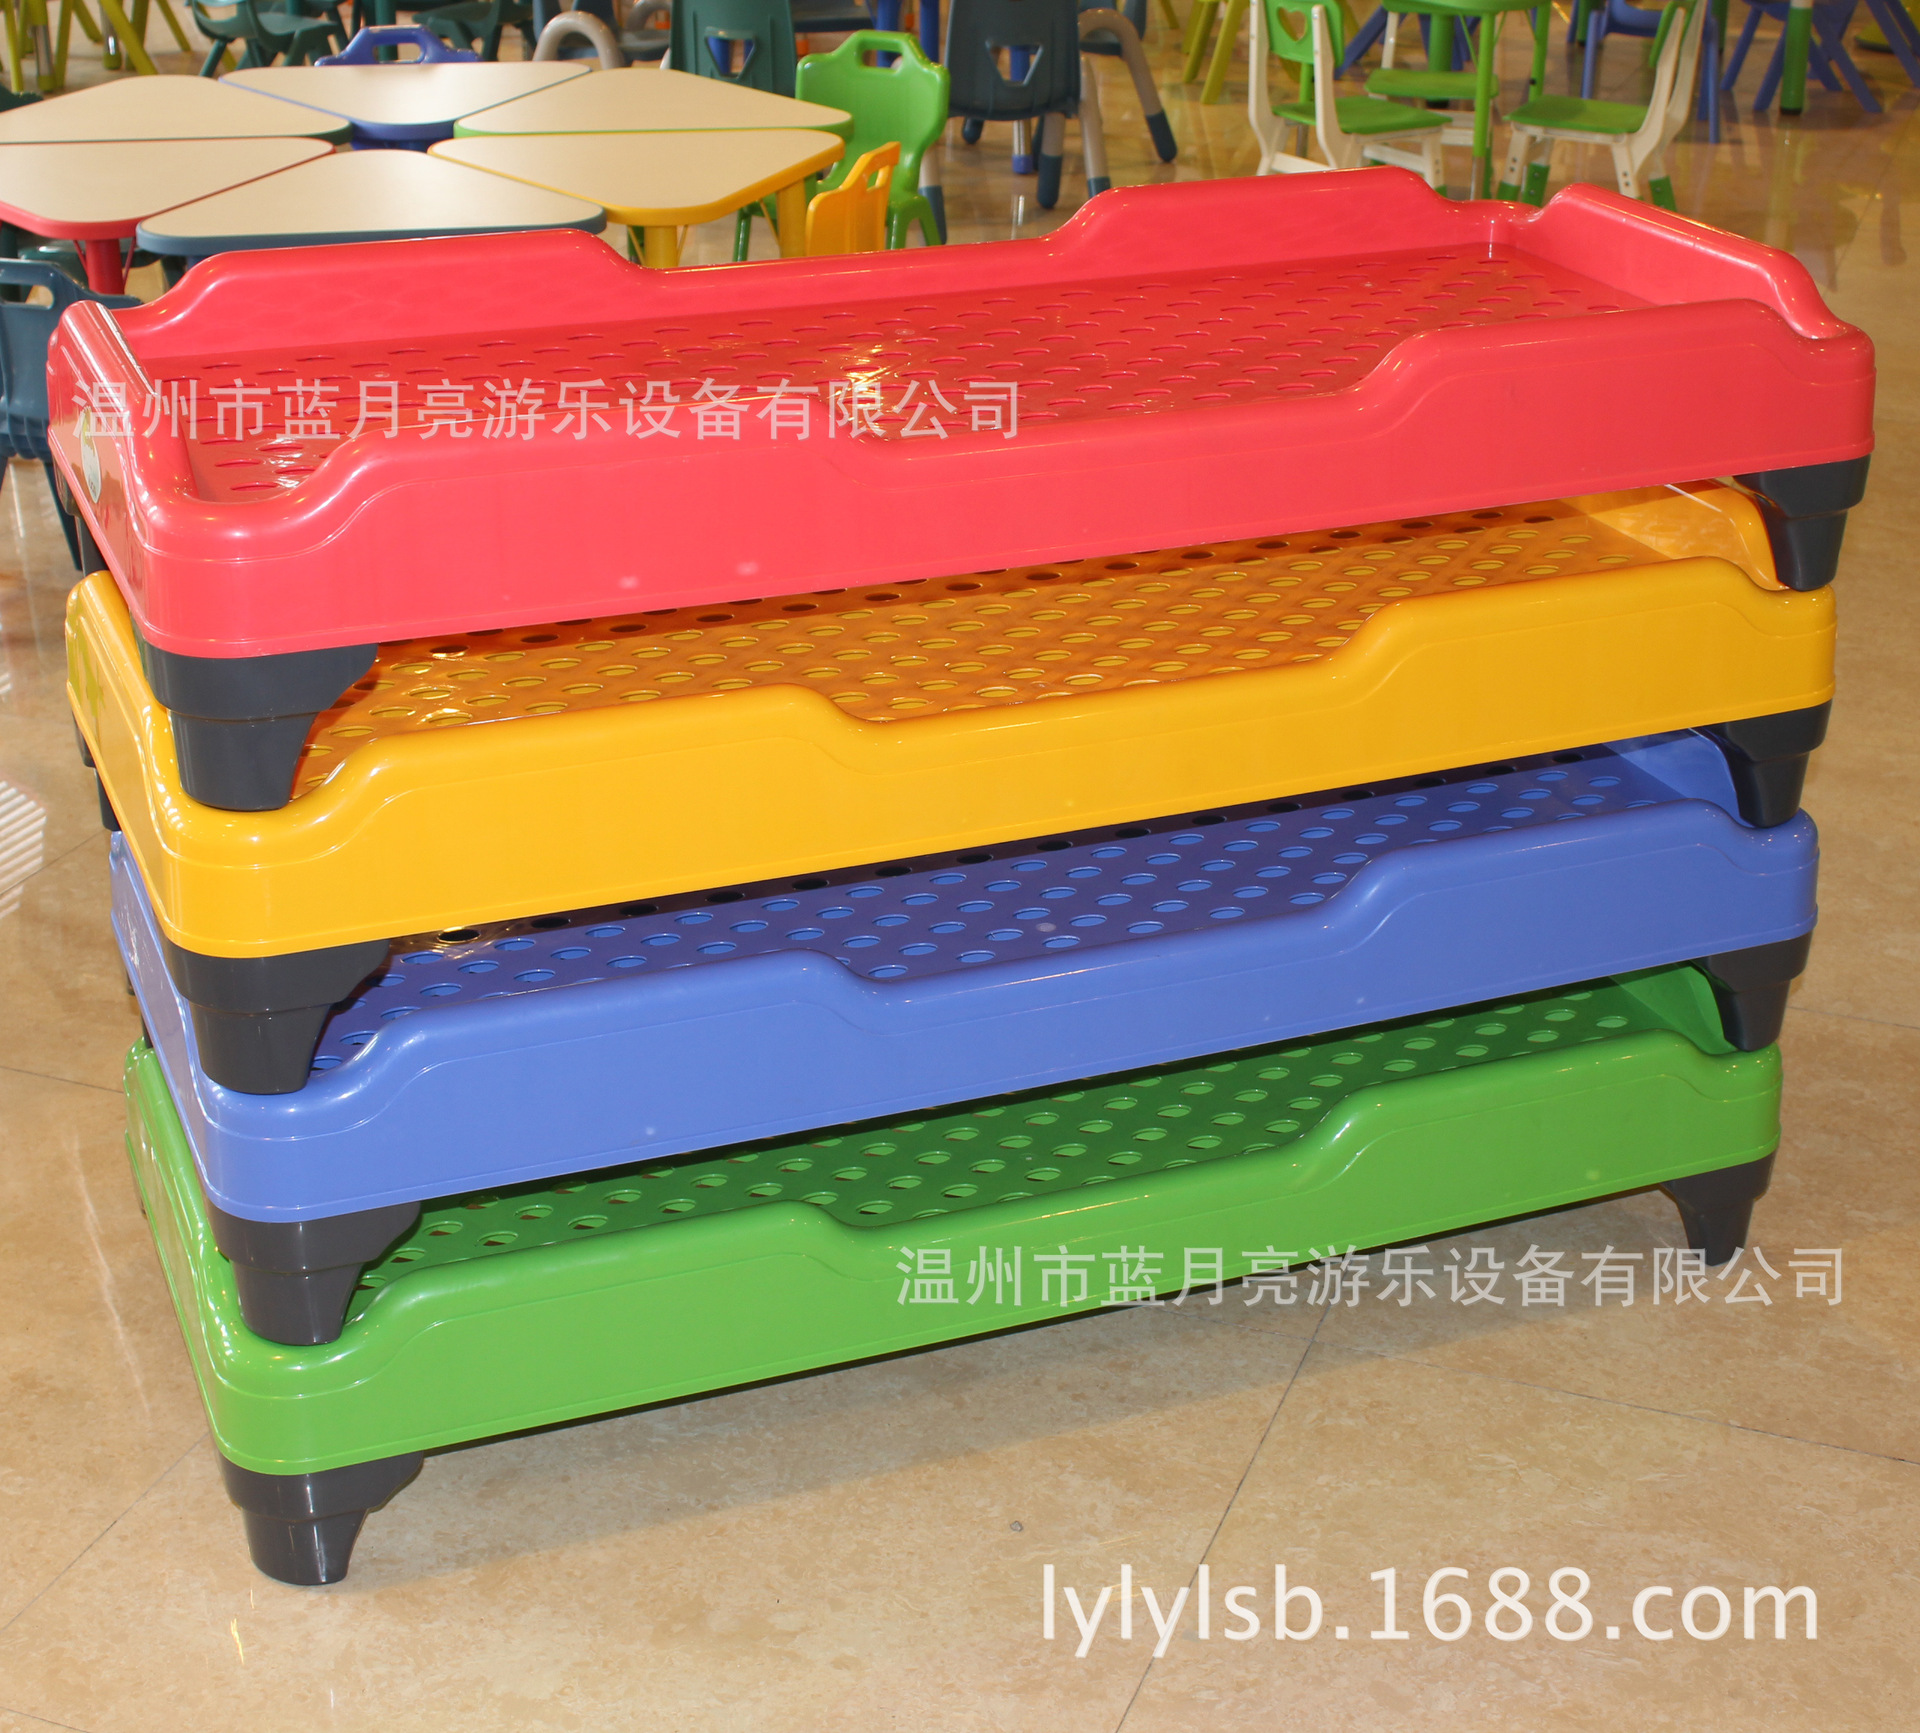 新款 幼儿园床基础设施 午睡床 幼儿园全塑料床 儿童折叠床直销